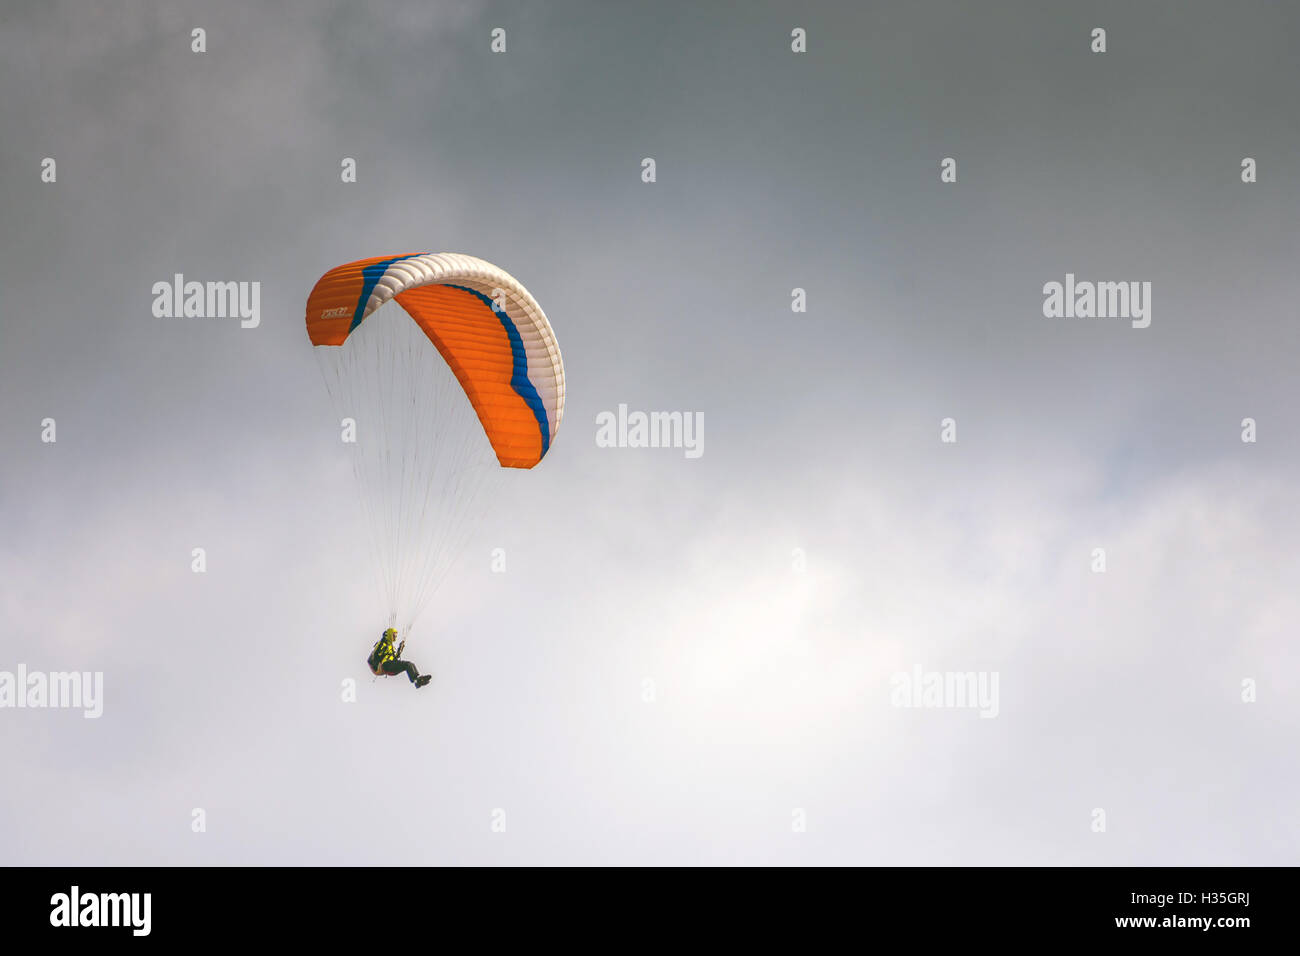 Solo-orange Gleitschirmspringen, Paragleiter, Hanglider fliegen, gegen grauen grauen Himmel Stockfoto